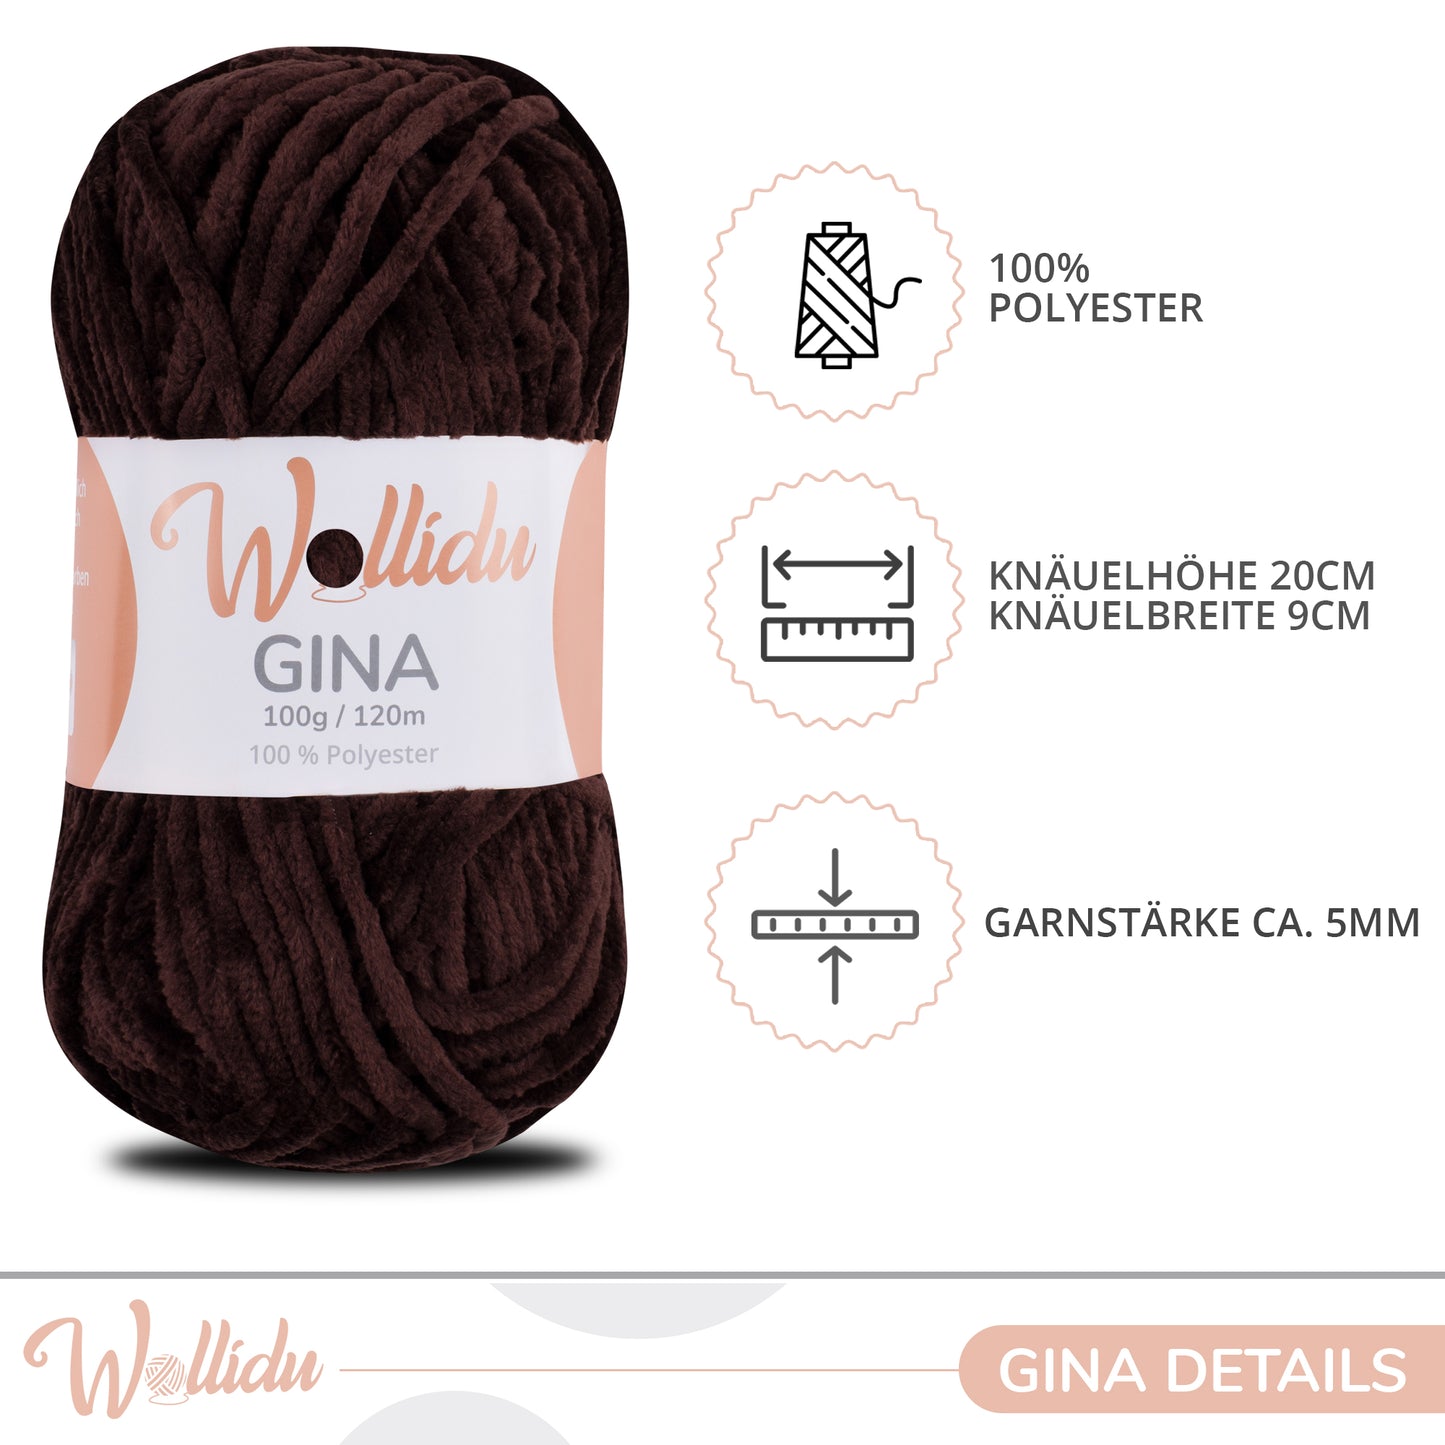 Wollidu Gina 100% Polyester 5 x 100g/120m - Braun